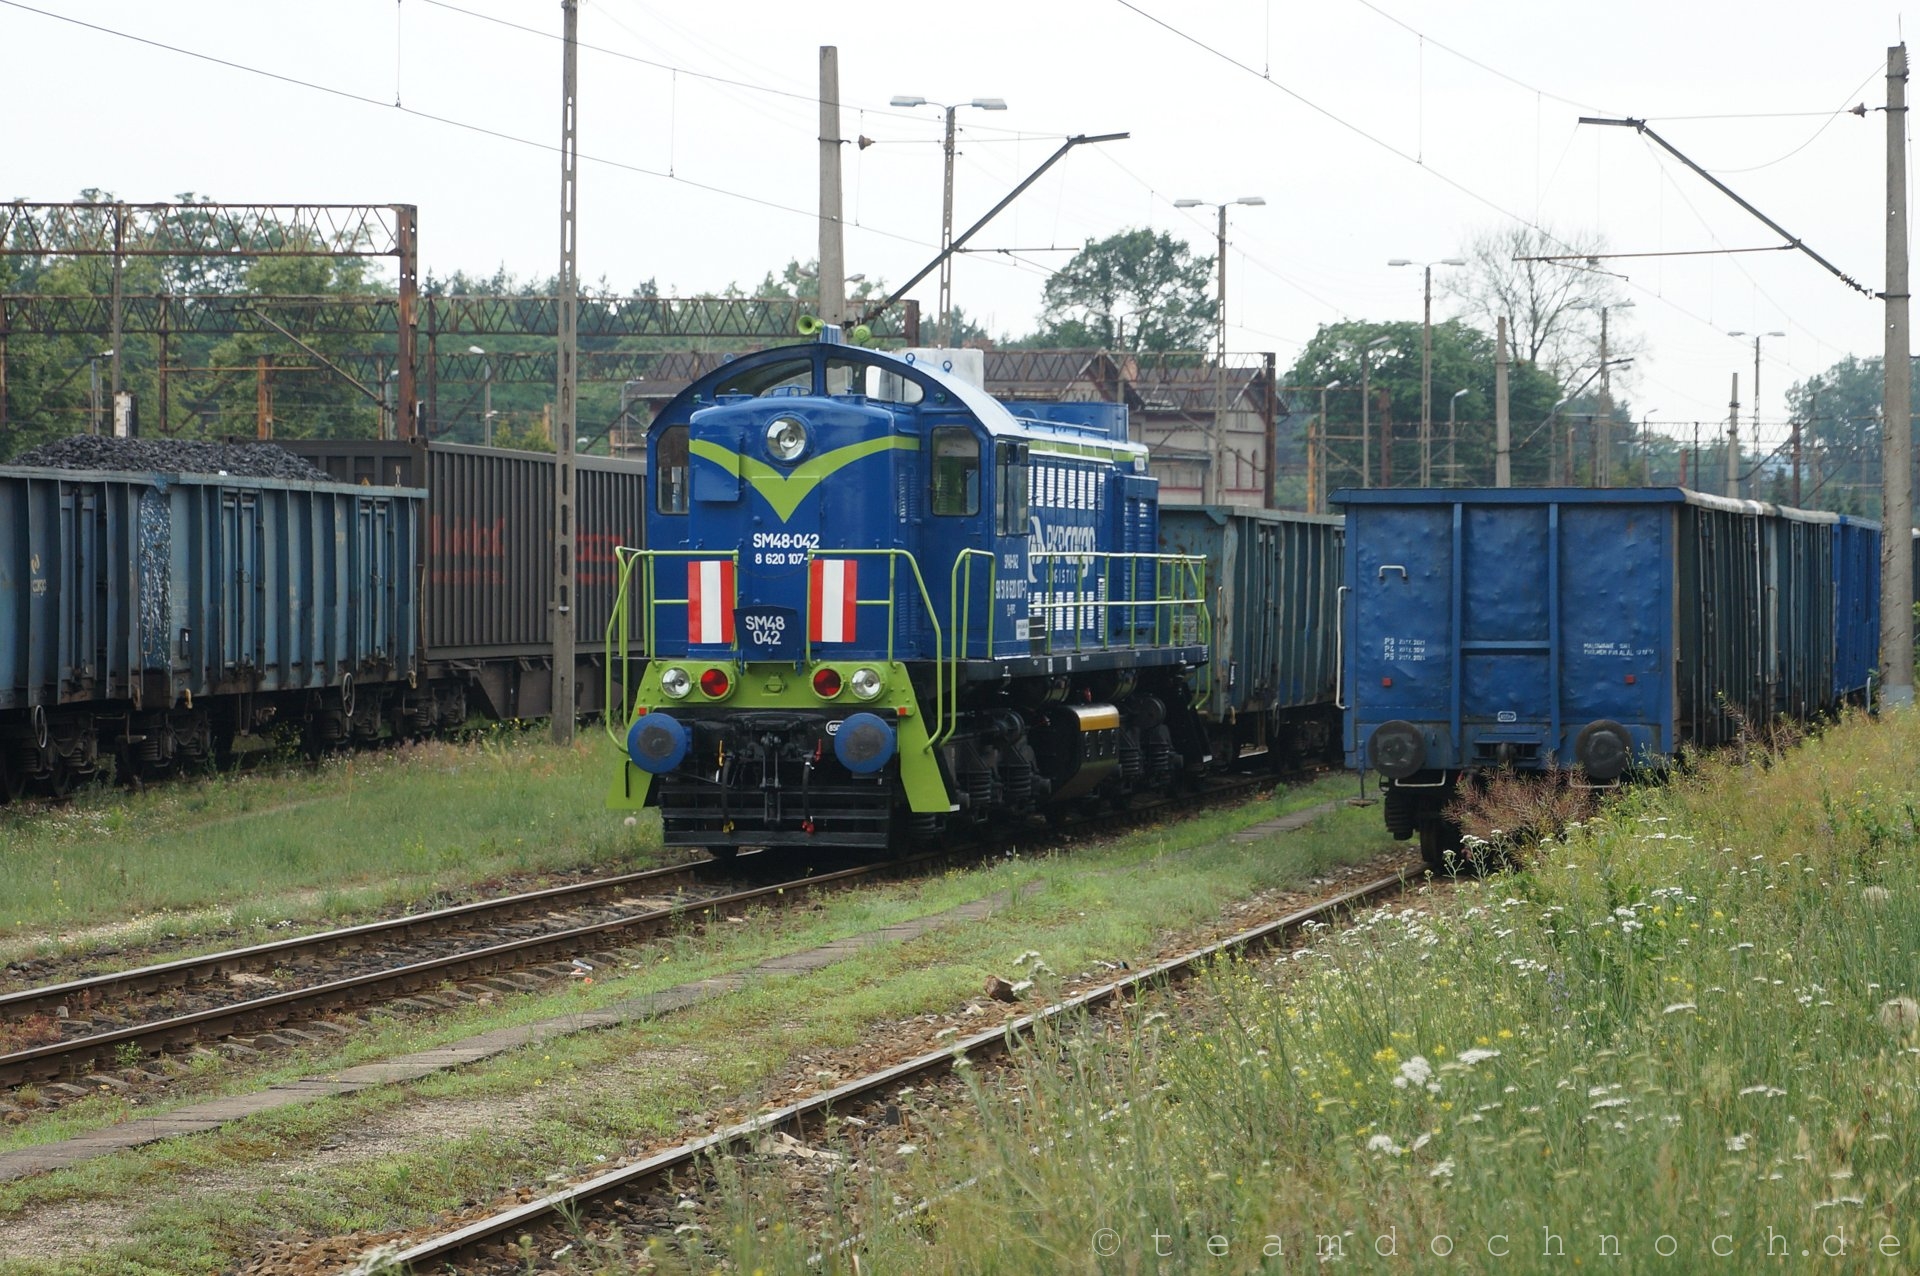 SM48-042 (8 620 107-7) in Czerwieńsk